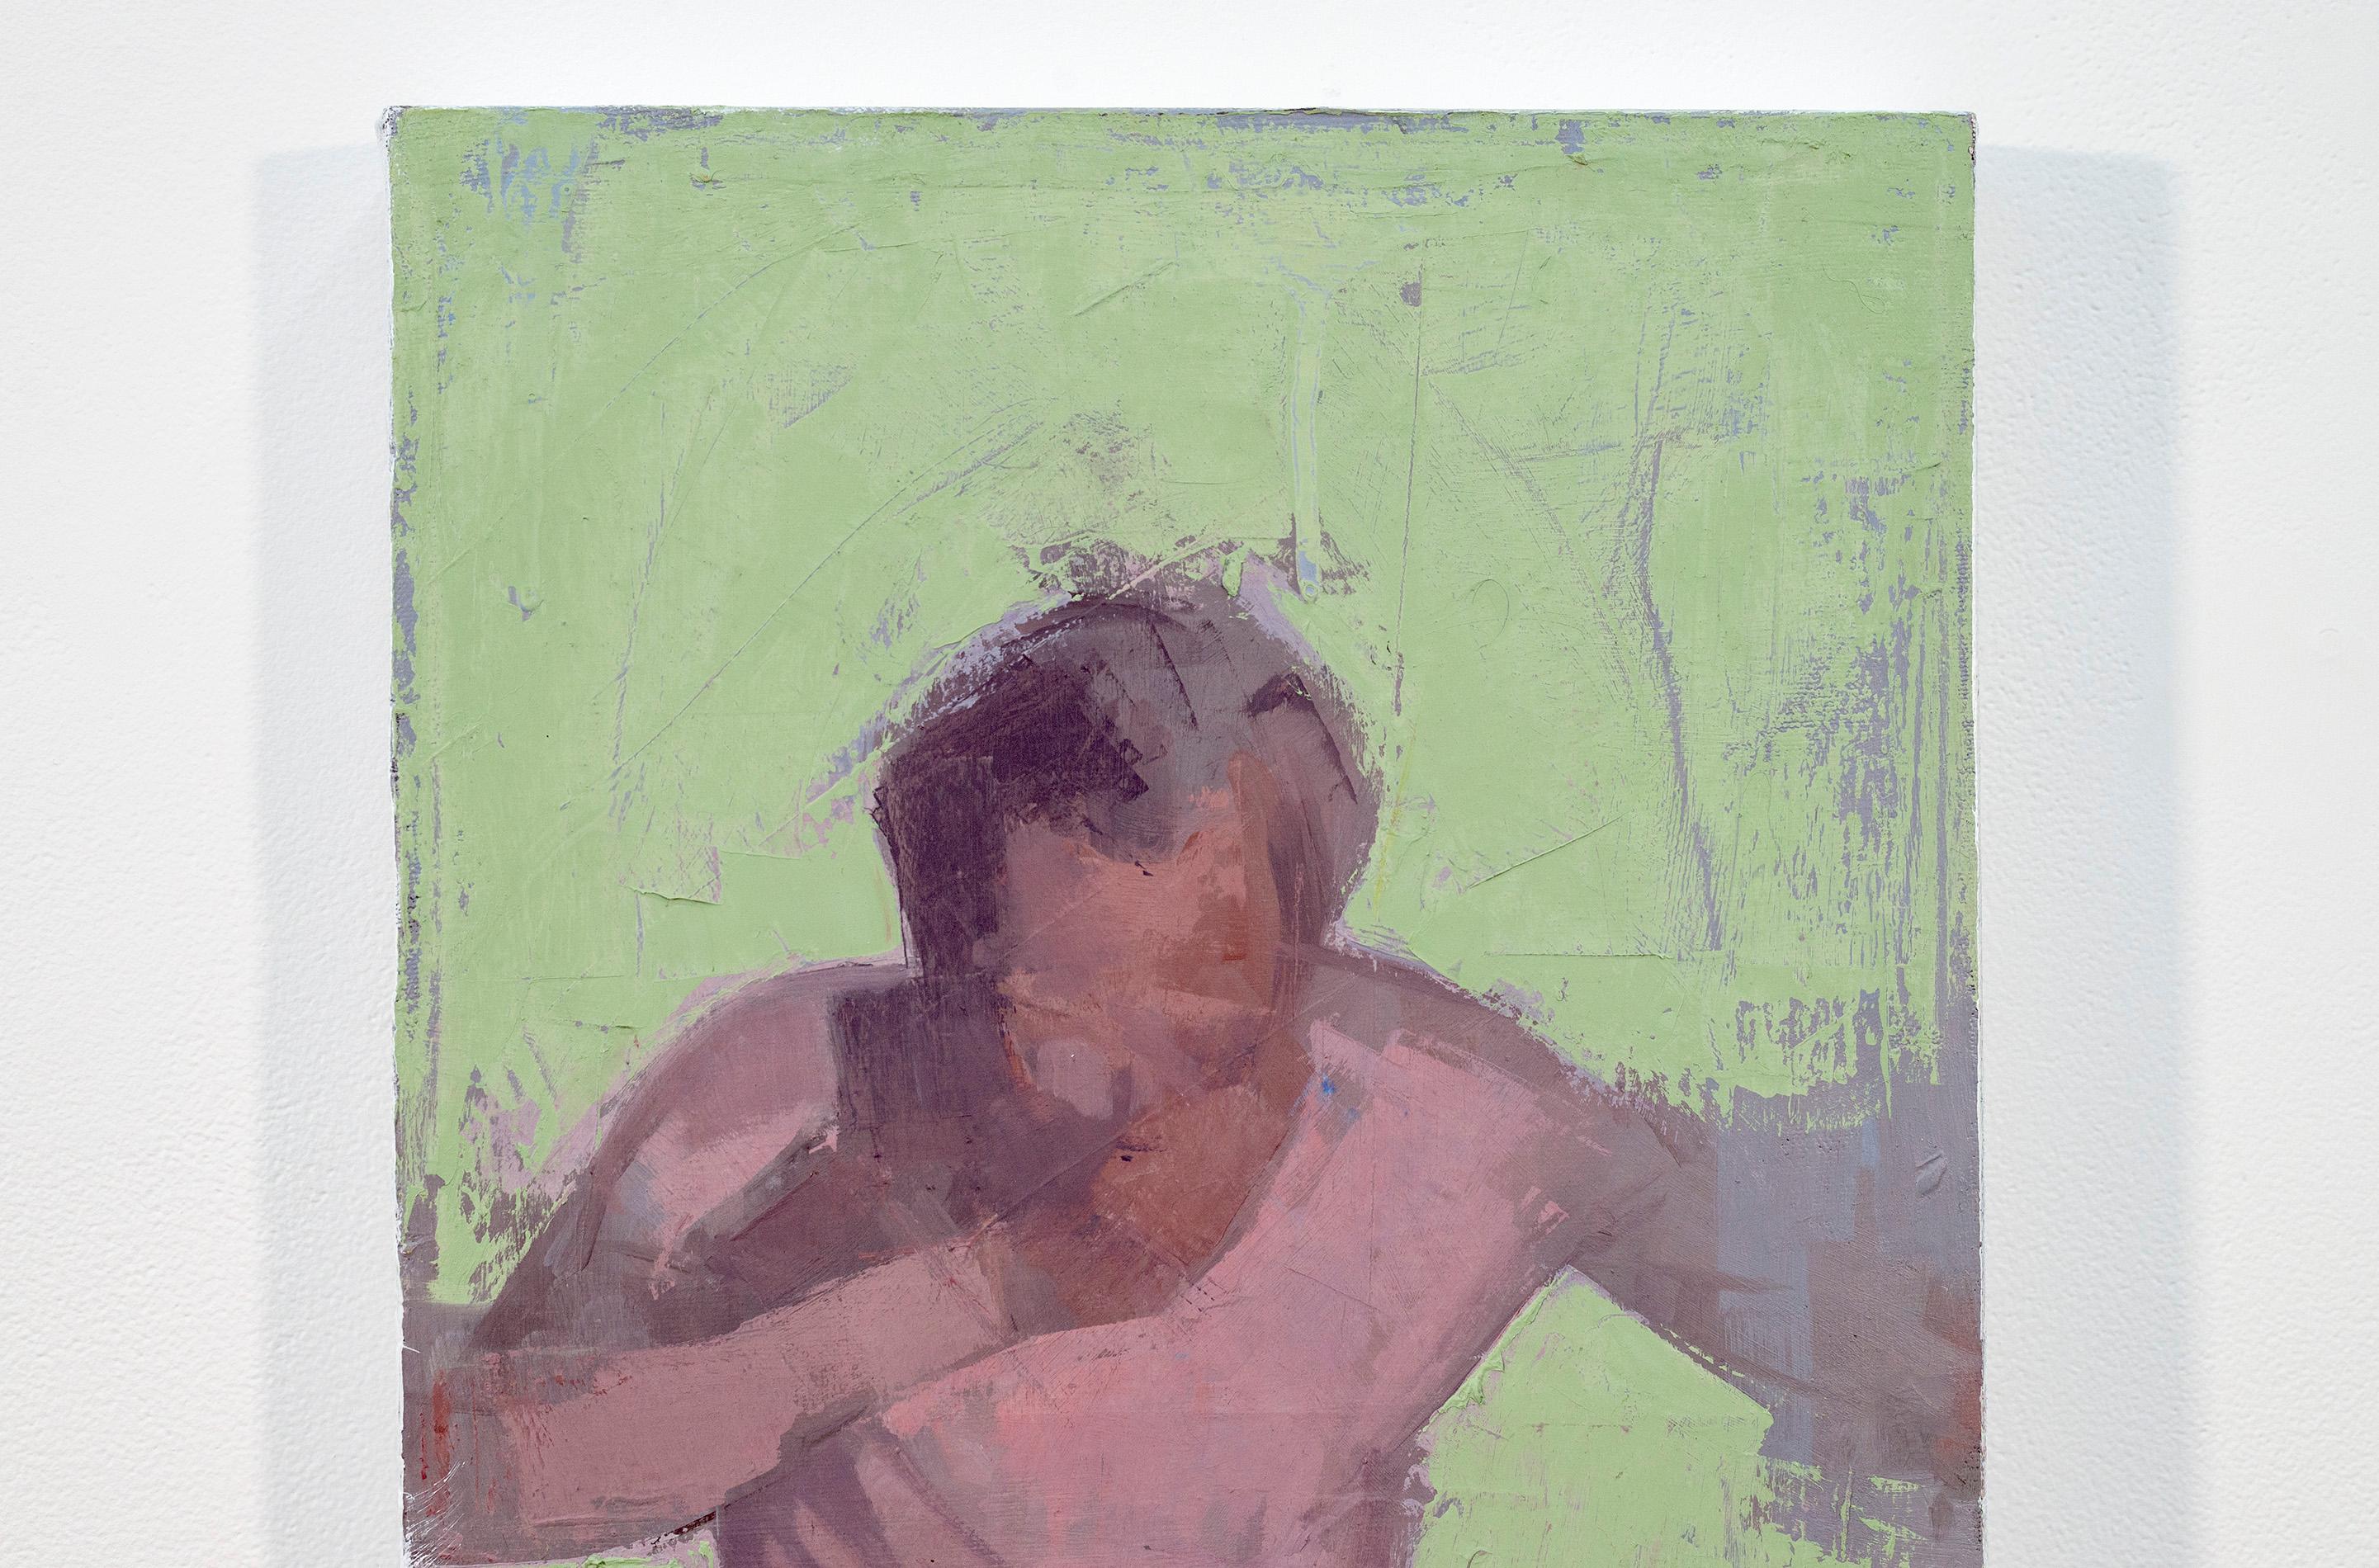 Diver No 1 – grün, lila, Porträt, männlich, abstrakt, figurativ, Öl auf Leinwand (Realismus), Painting, von Daniel Hughes